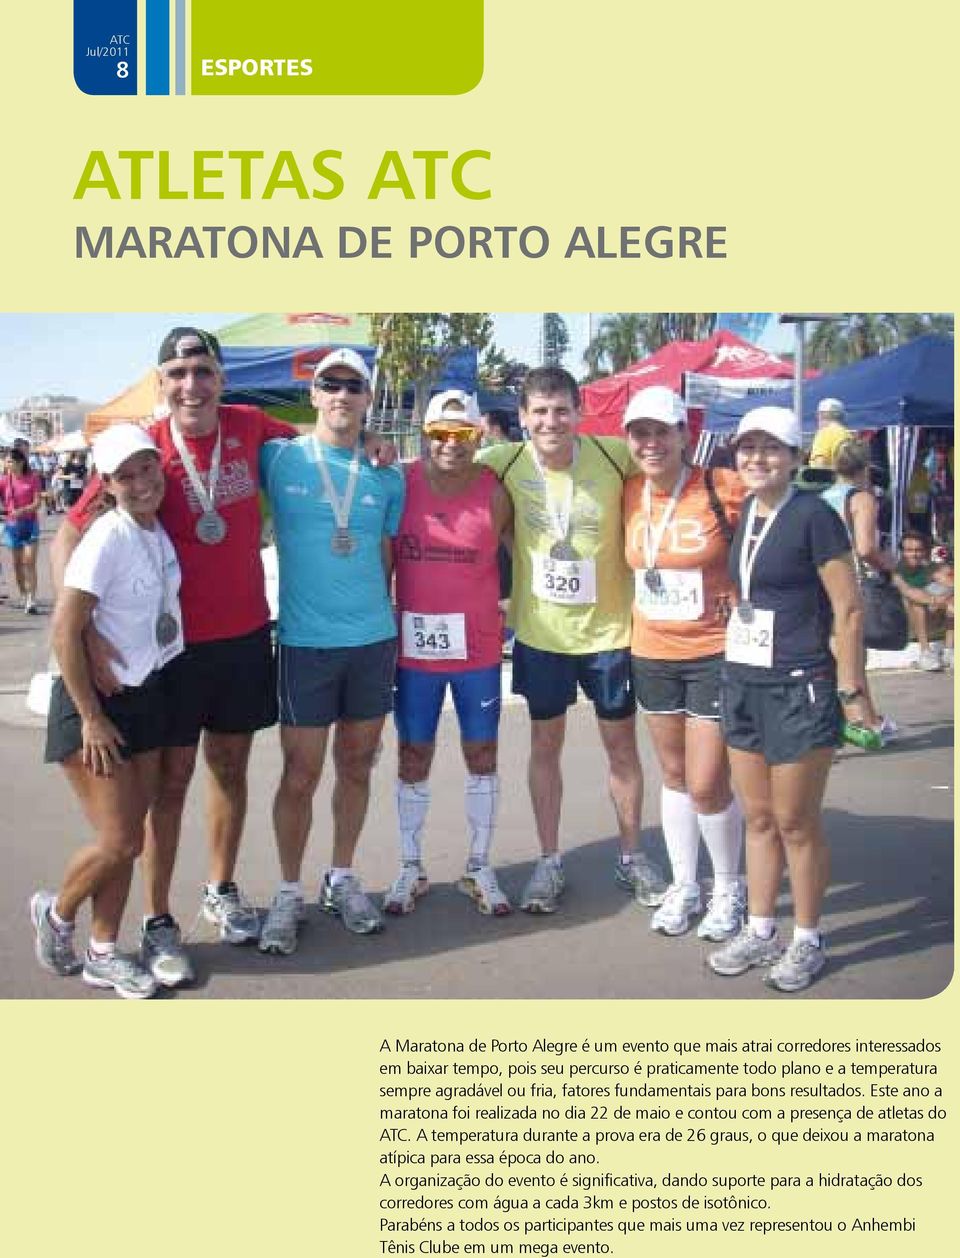 Este ano a maratona foi realizada no dia 22 de maio e contou com a presença de atletas do ATC.